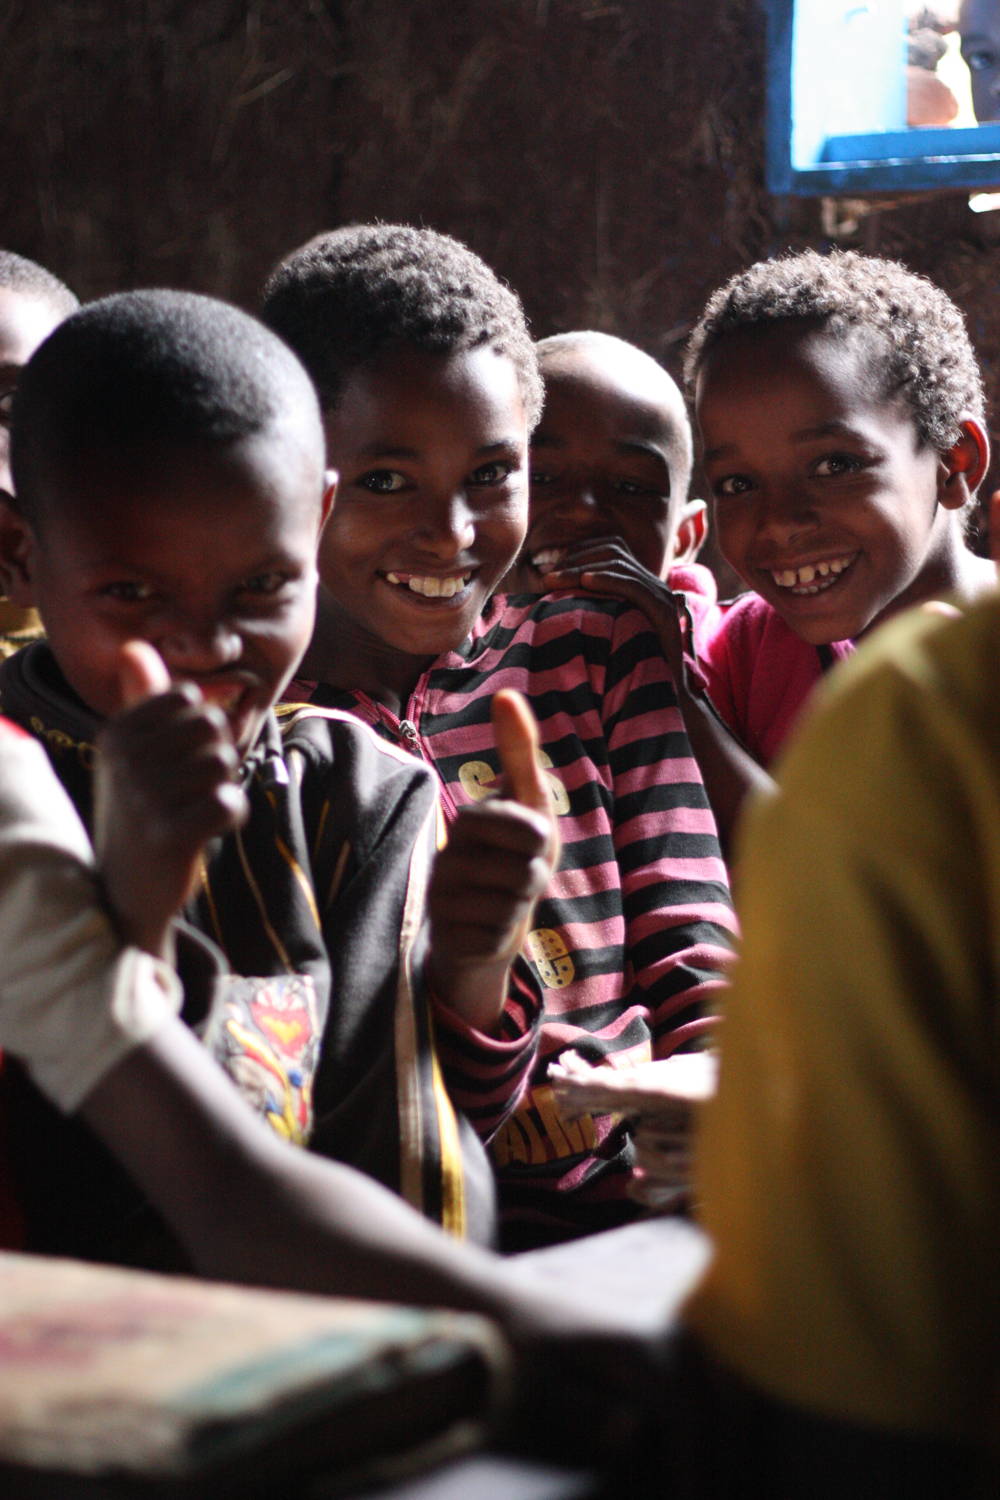 Wir treffen Schulkinder in Äthiopien